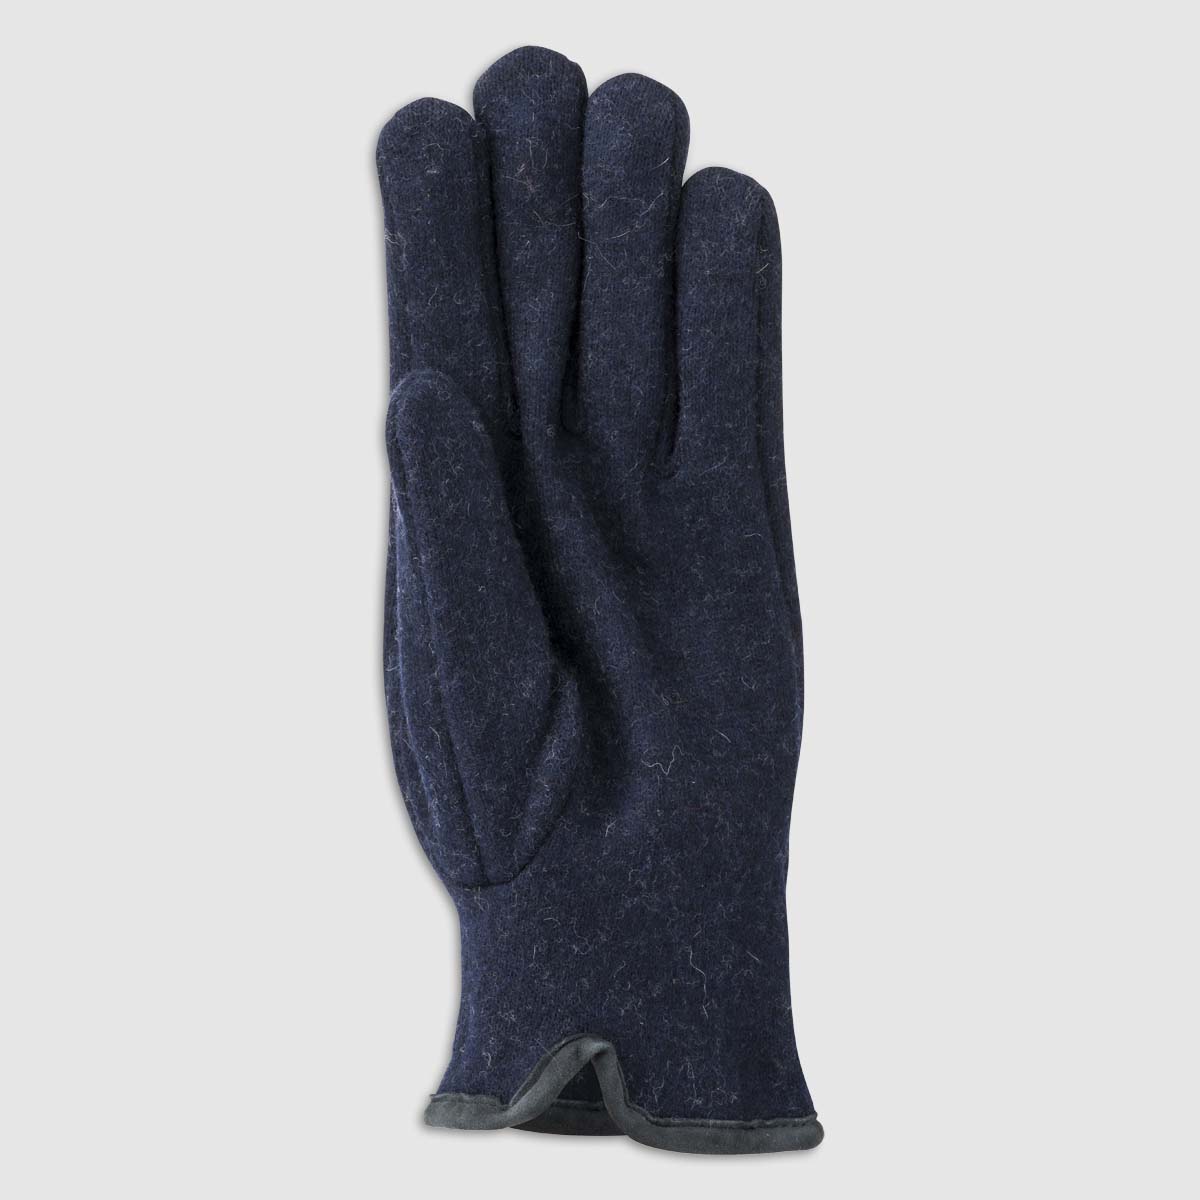 Double Wool Glove in Blue Alpo Guanti on sale 2022 2